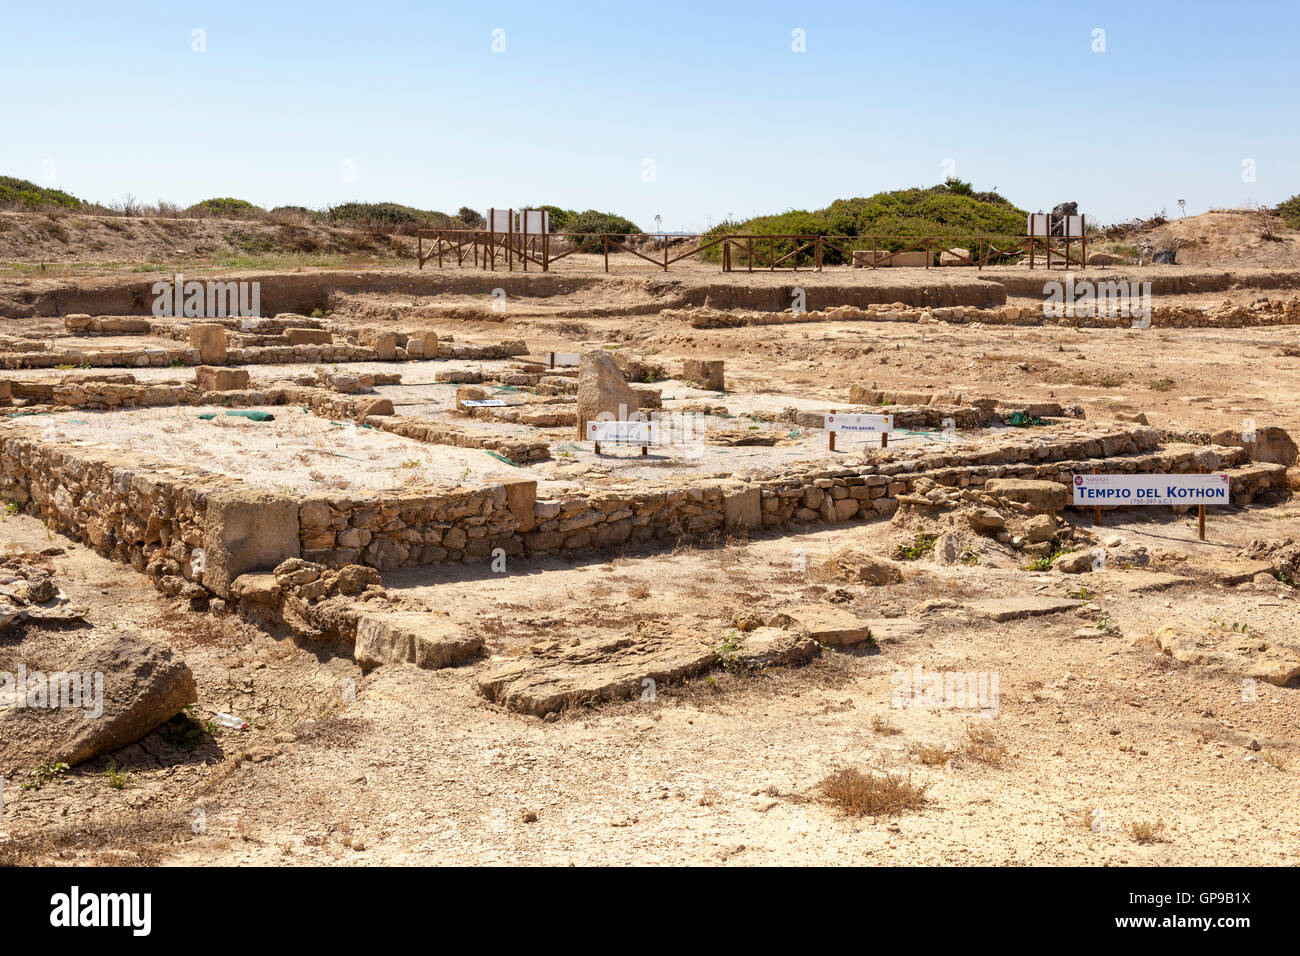 Tempio del Kothon nelle rovine archeologiche, Mozia, vicino Stagnone di Marsala e Trapani, Sicilia, Italia Foto Stock